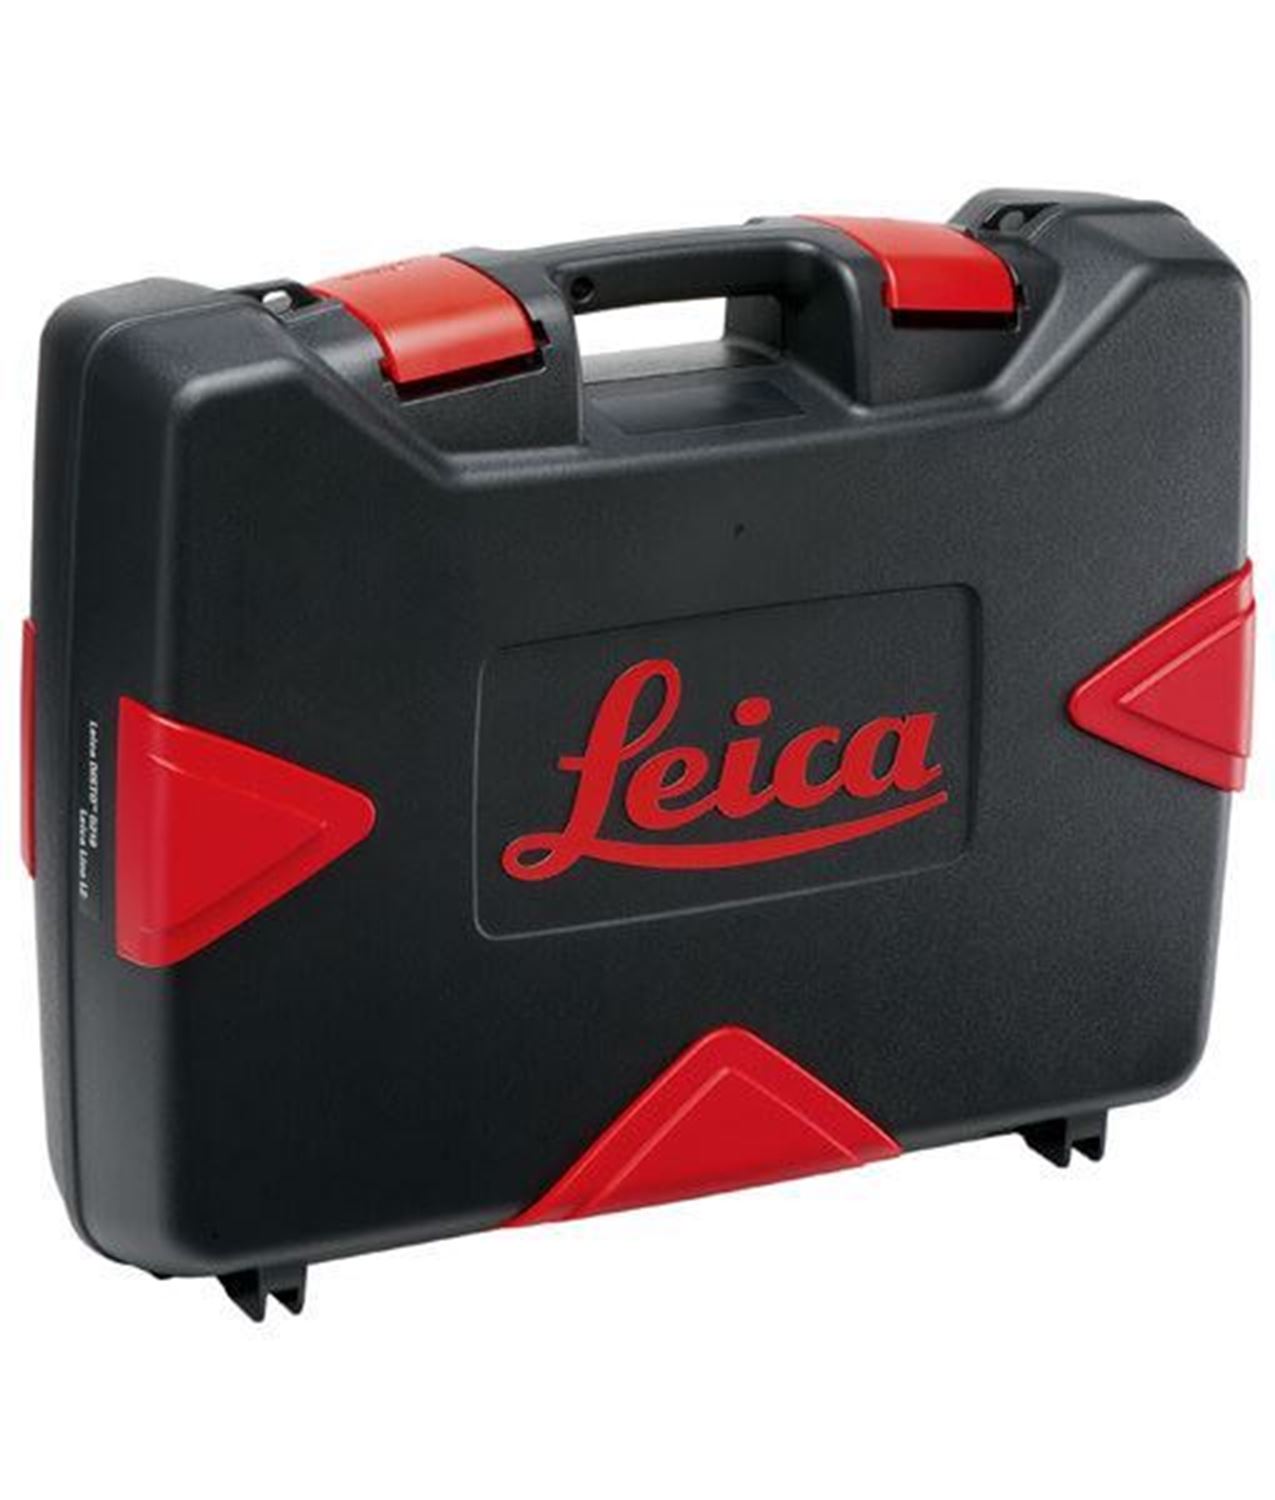 Снимка на Лазерна ролетка DISTO S910, адаптер за статив FTA 360S,TRI120 статив и куфар,887900,Leica